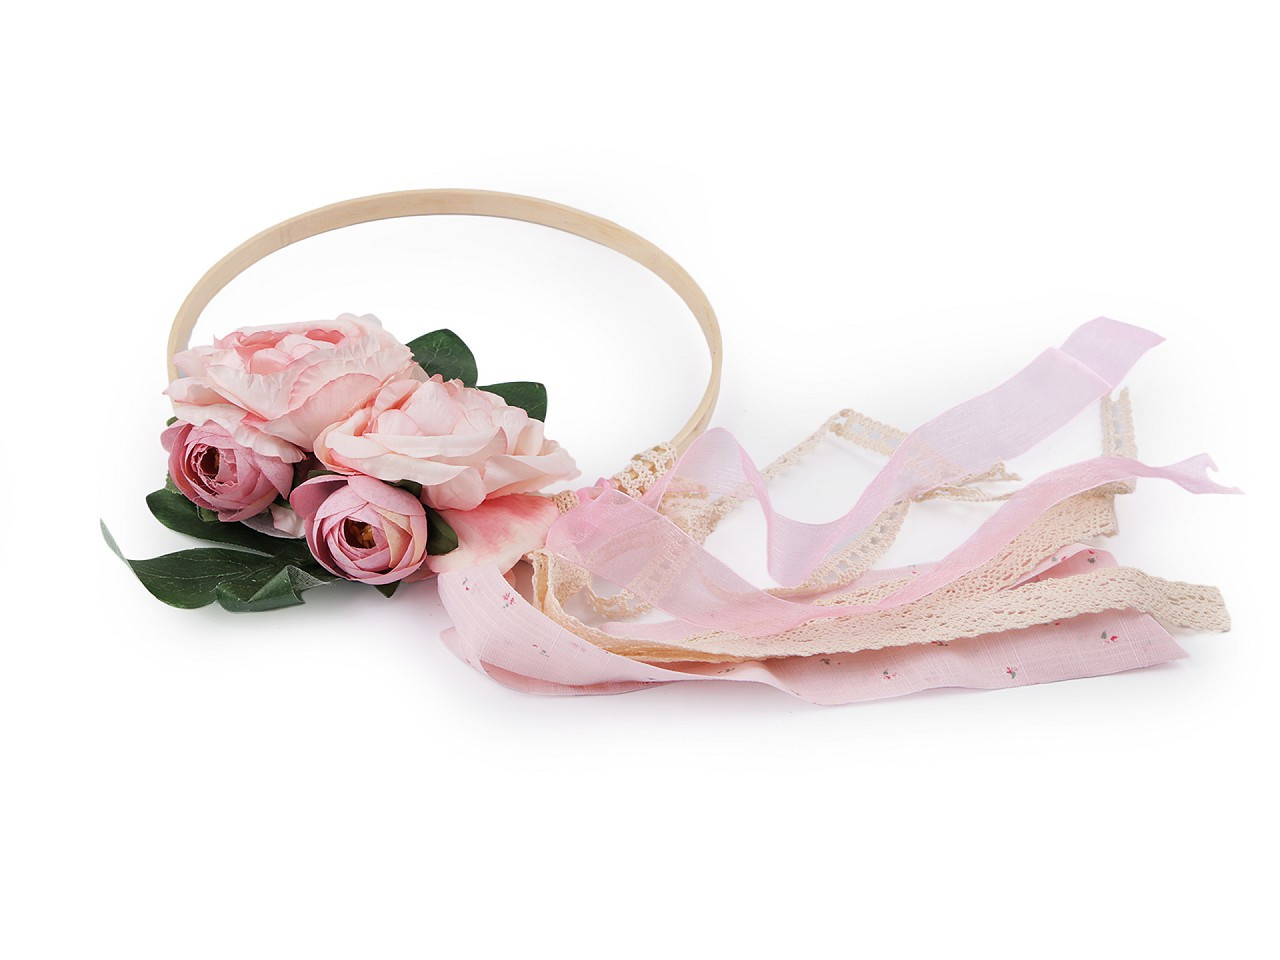 Svatební dekorace kruh s květy Ø19,5 cm, barva 2 růžová sv. krajka